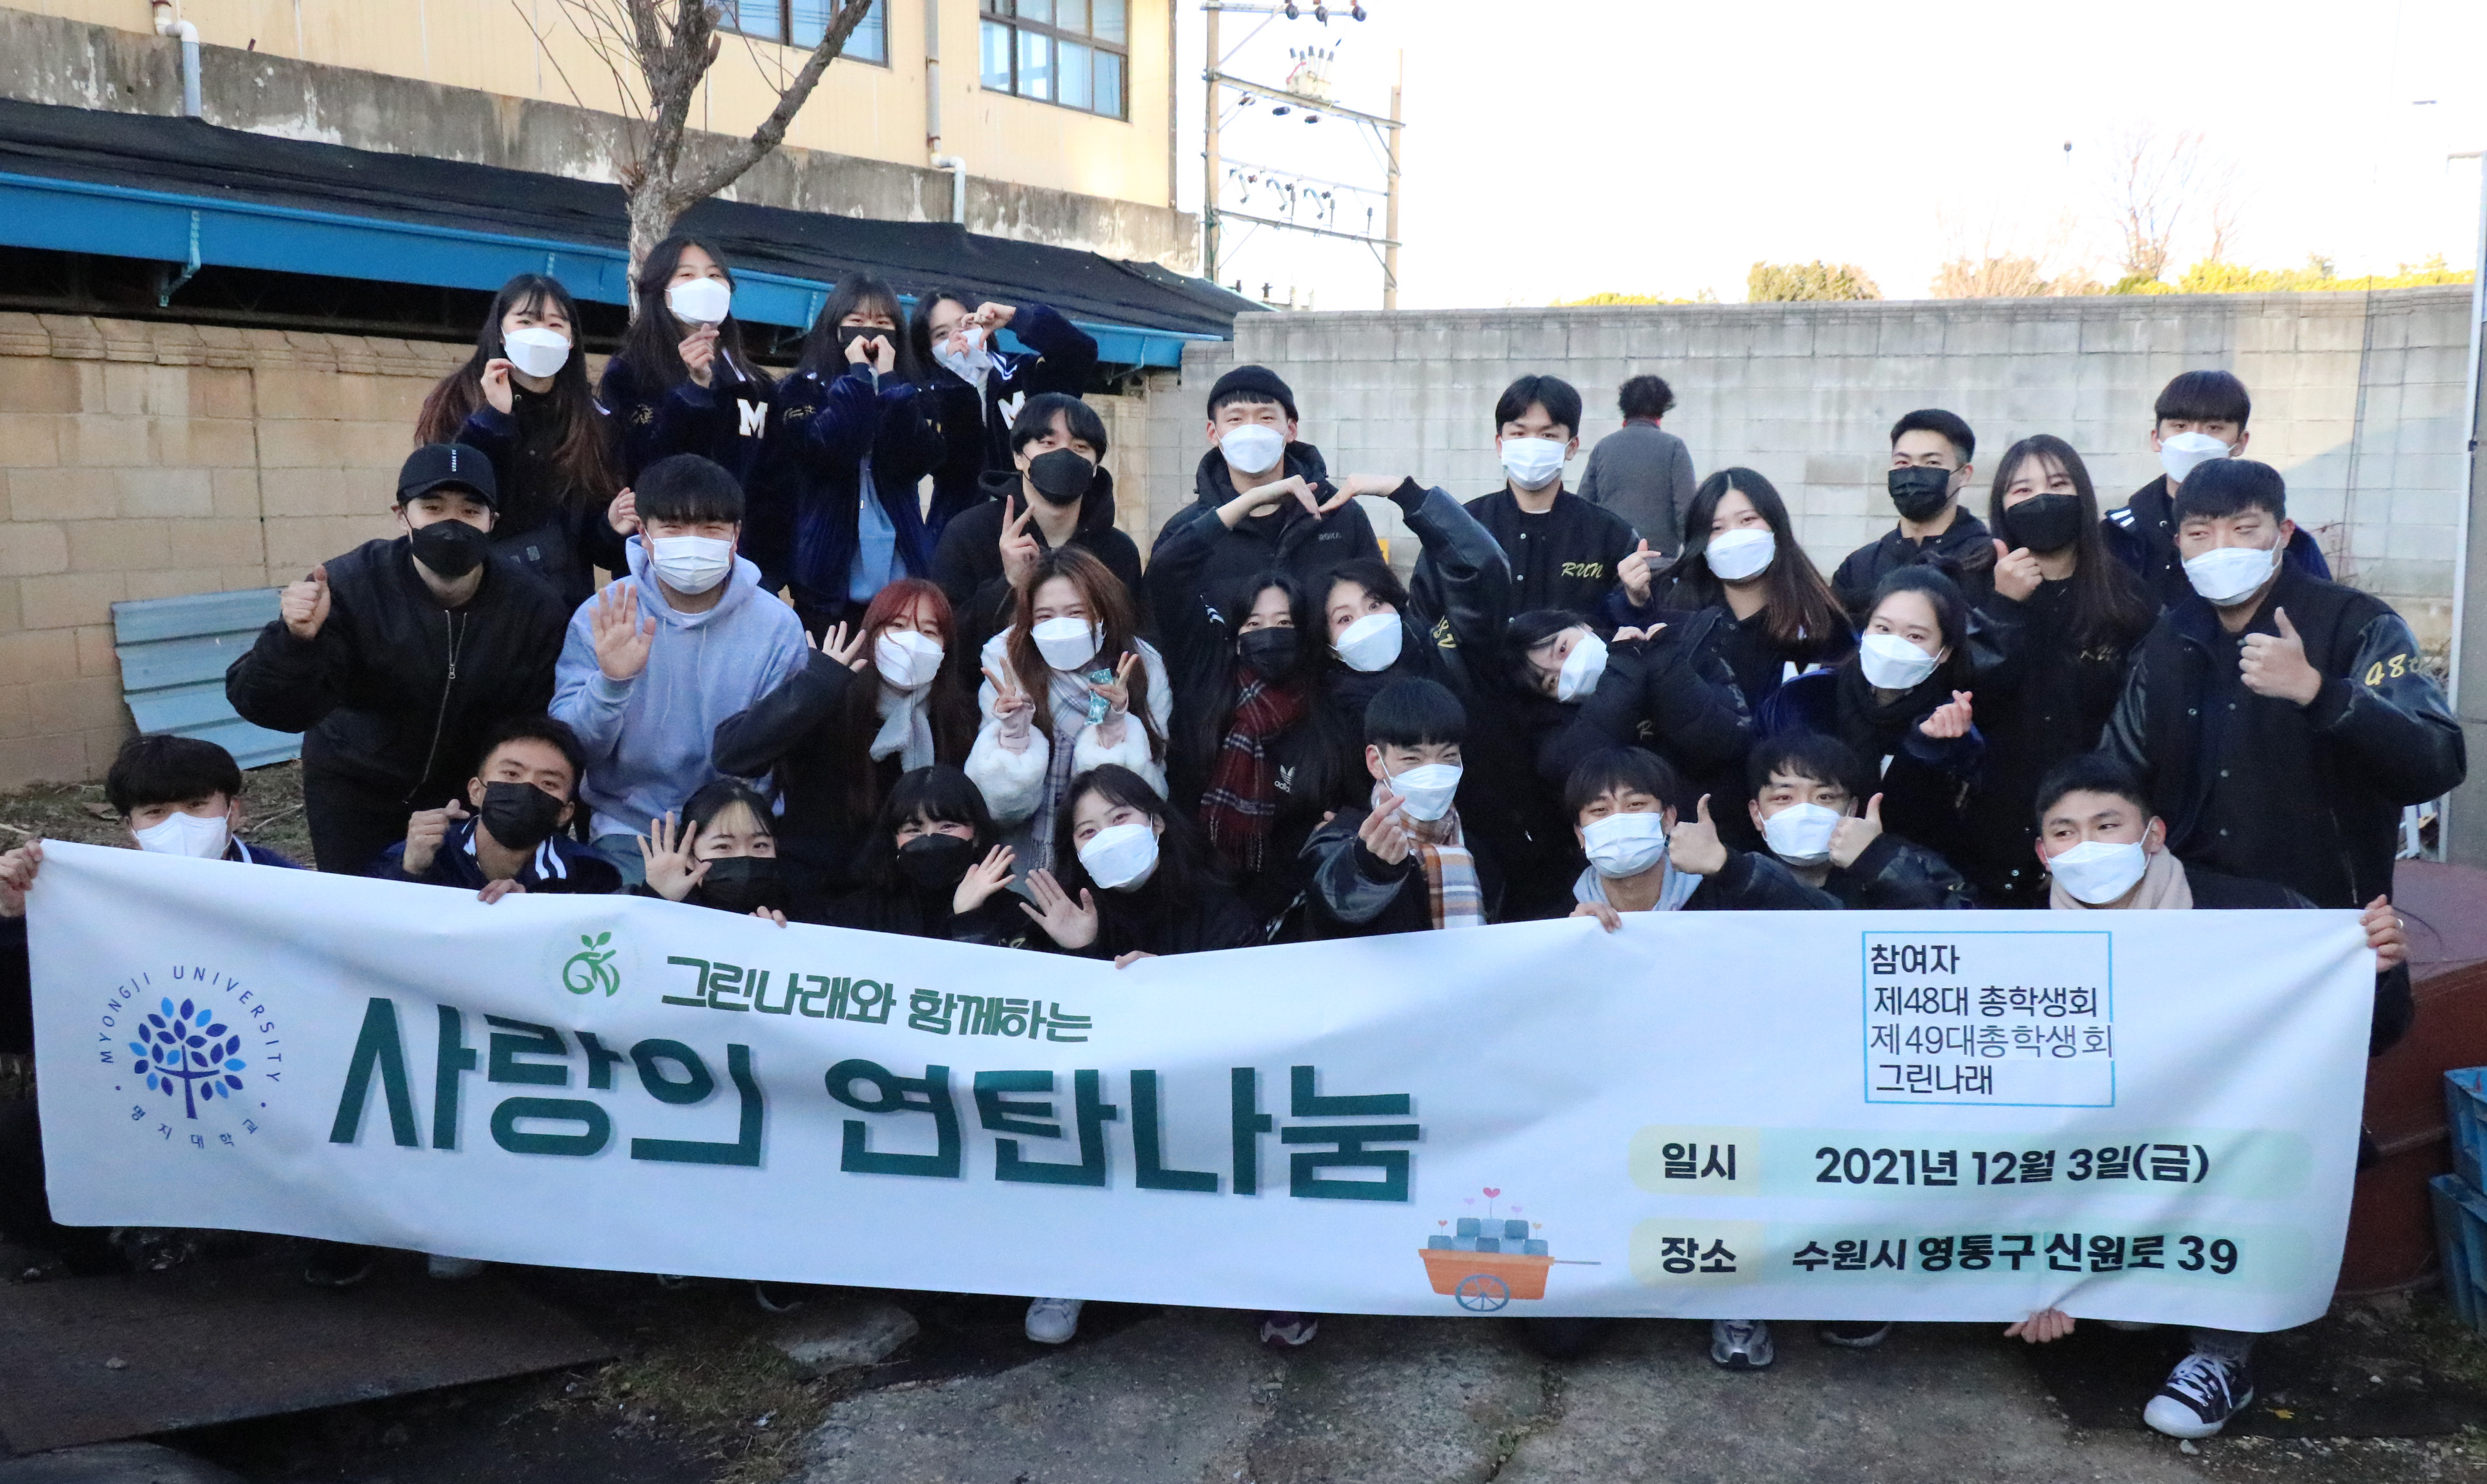 명지대 학생복지봉사팀 그린나래, ‘사랑의 연탄 나눔’ 행사 개최 대표이미지